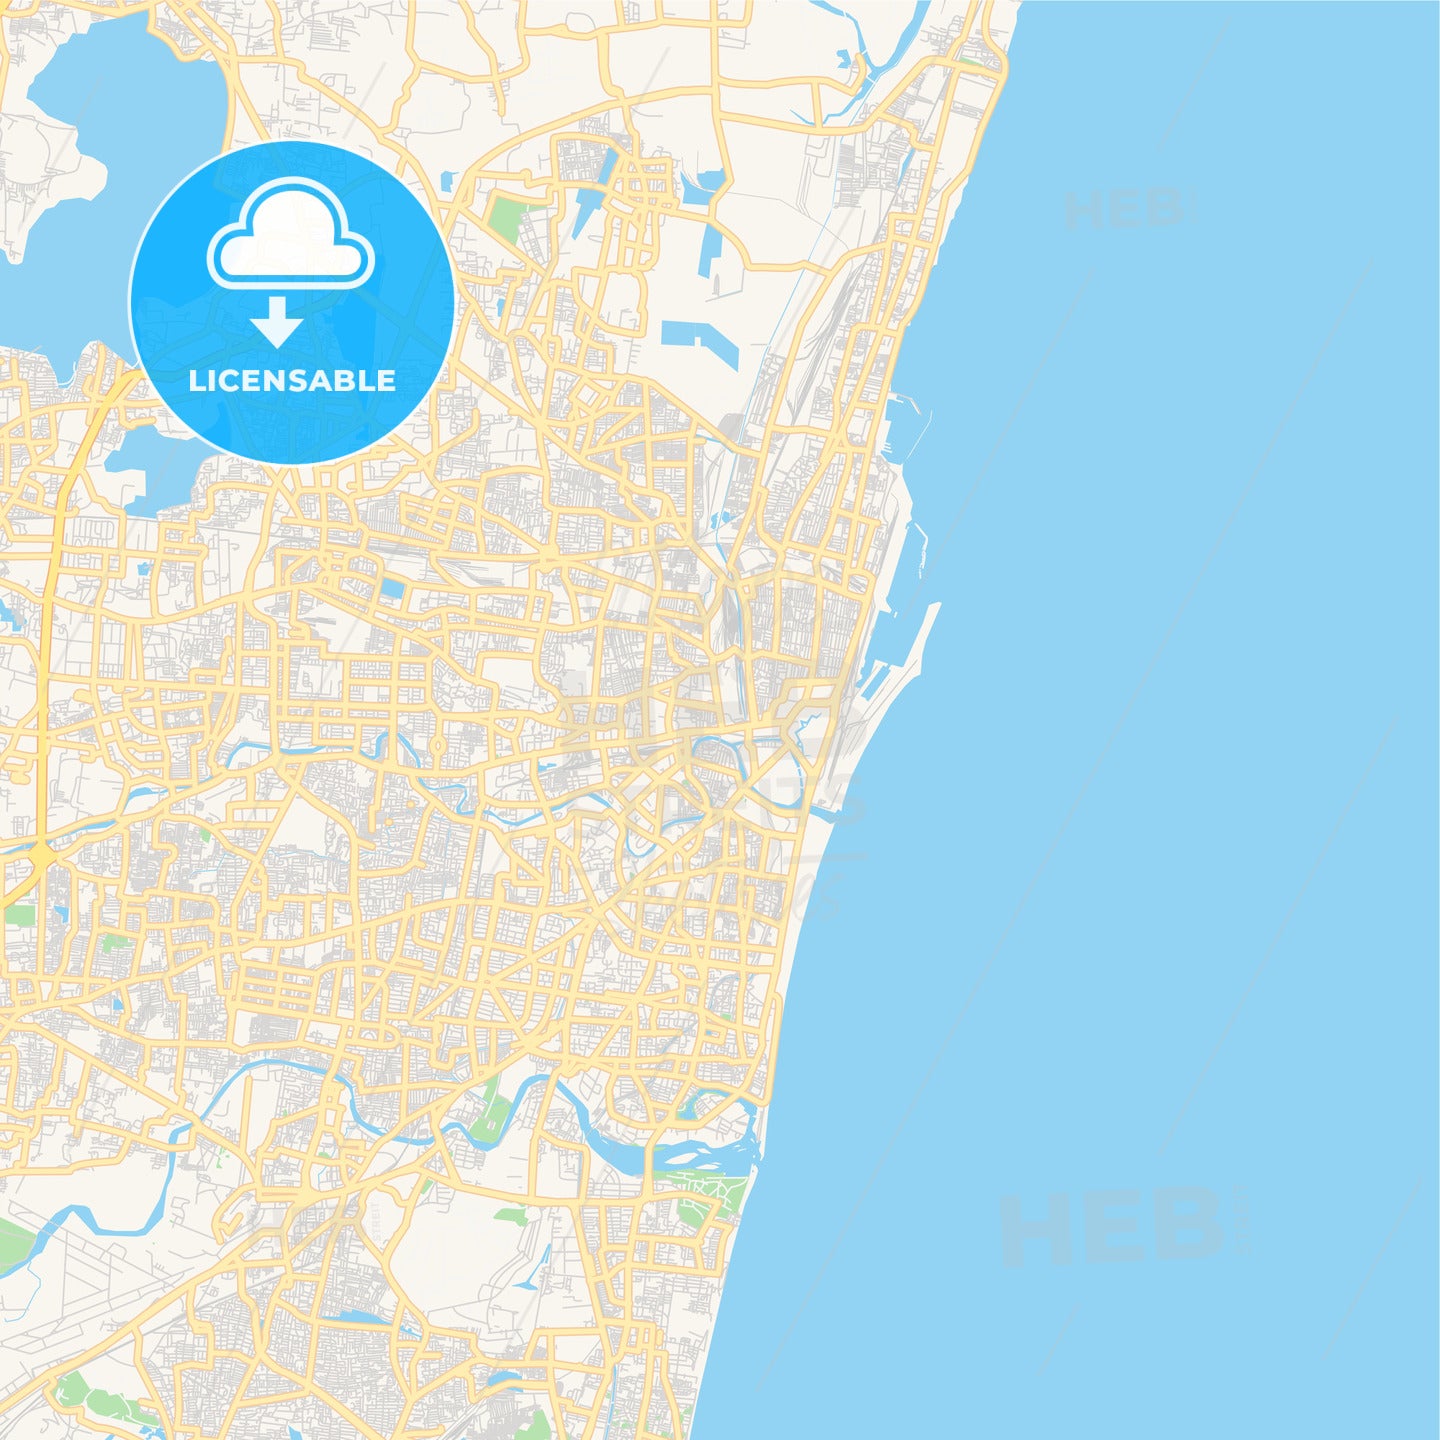 Printable street map of Chennai, India